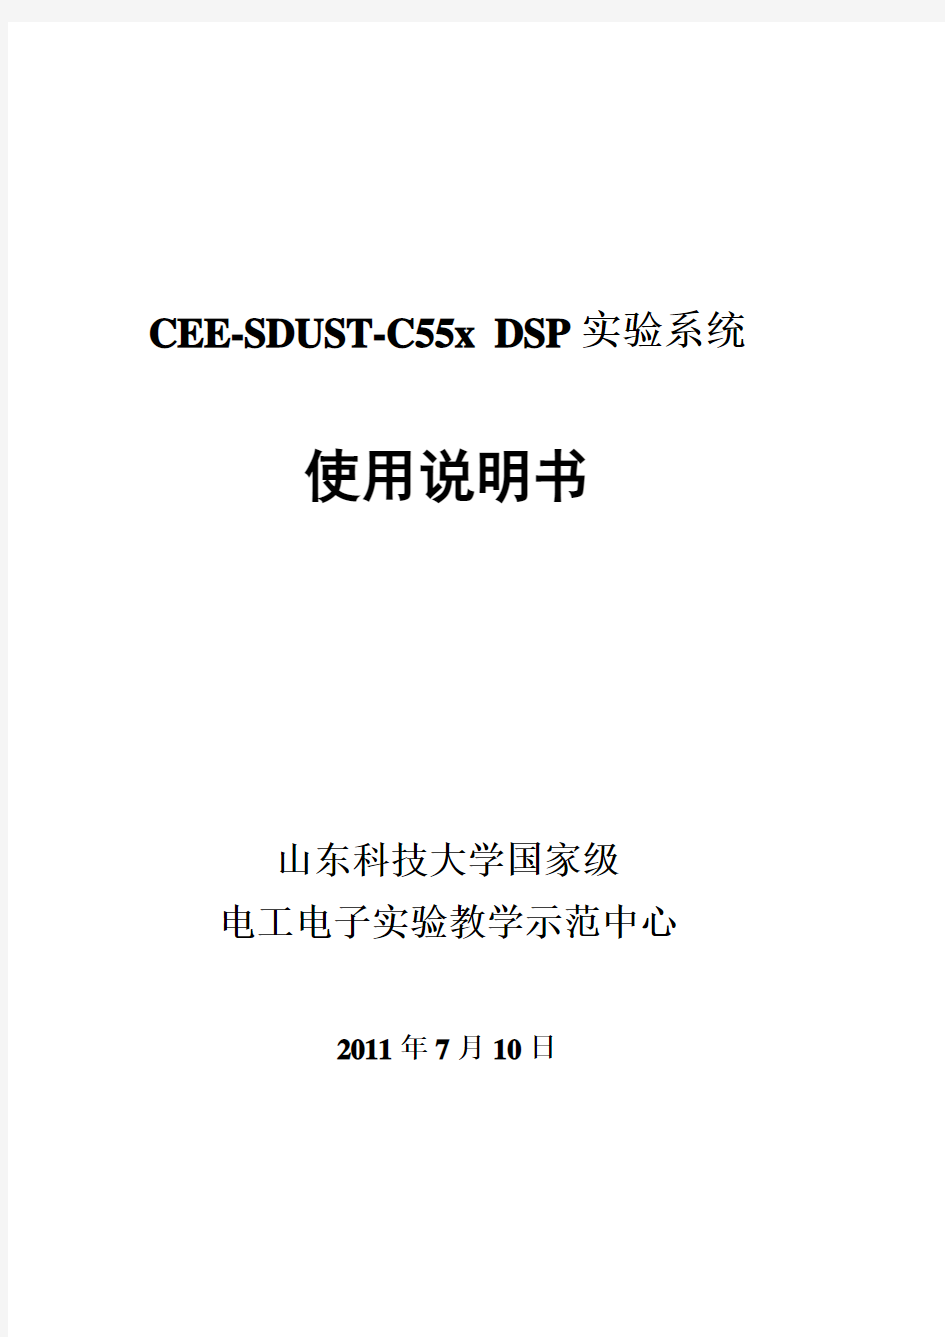 CEE-SDUST-5509A实验系统说明书-全文(2011.7.10)